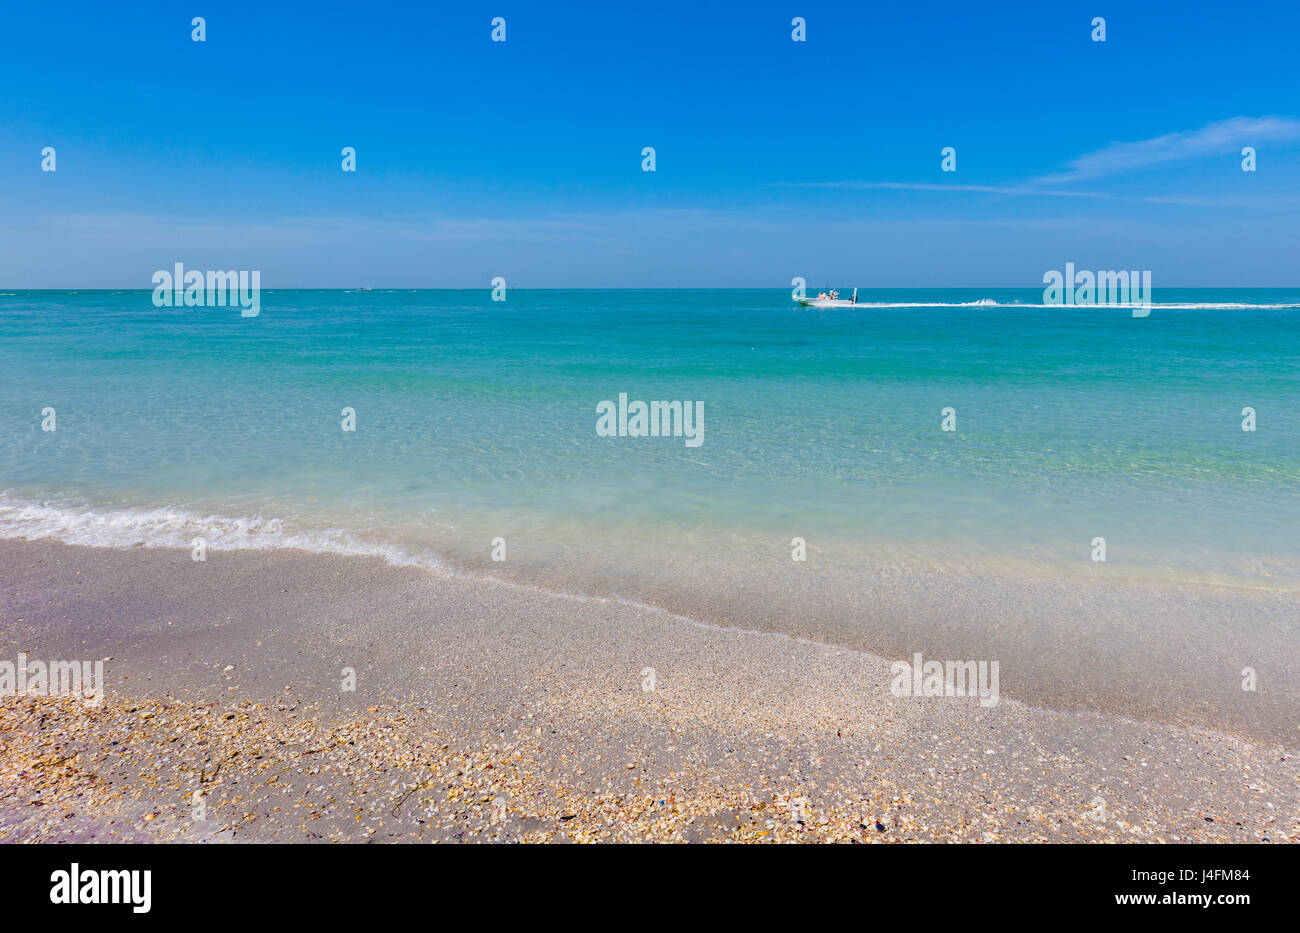 Plage avec claire calme eau aqua marine du golfe du Mexique à partir de Gasparilla Island en Floride Banque D'Images